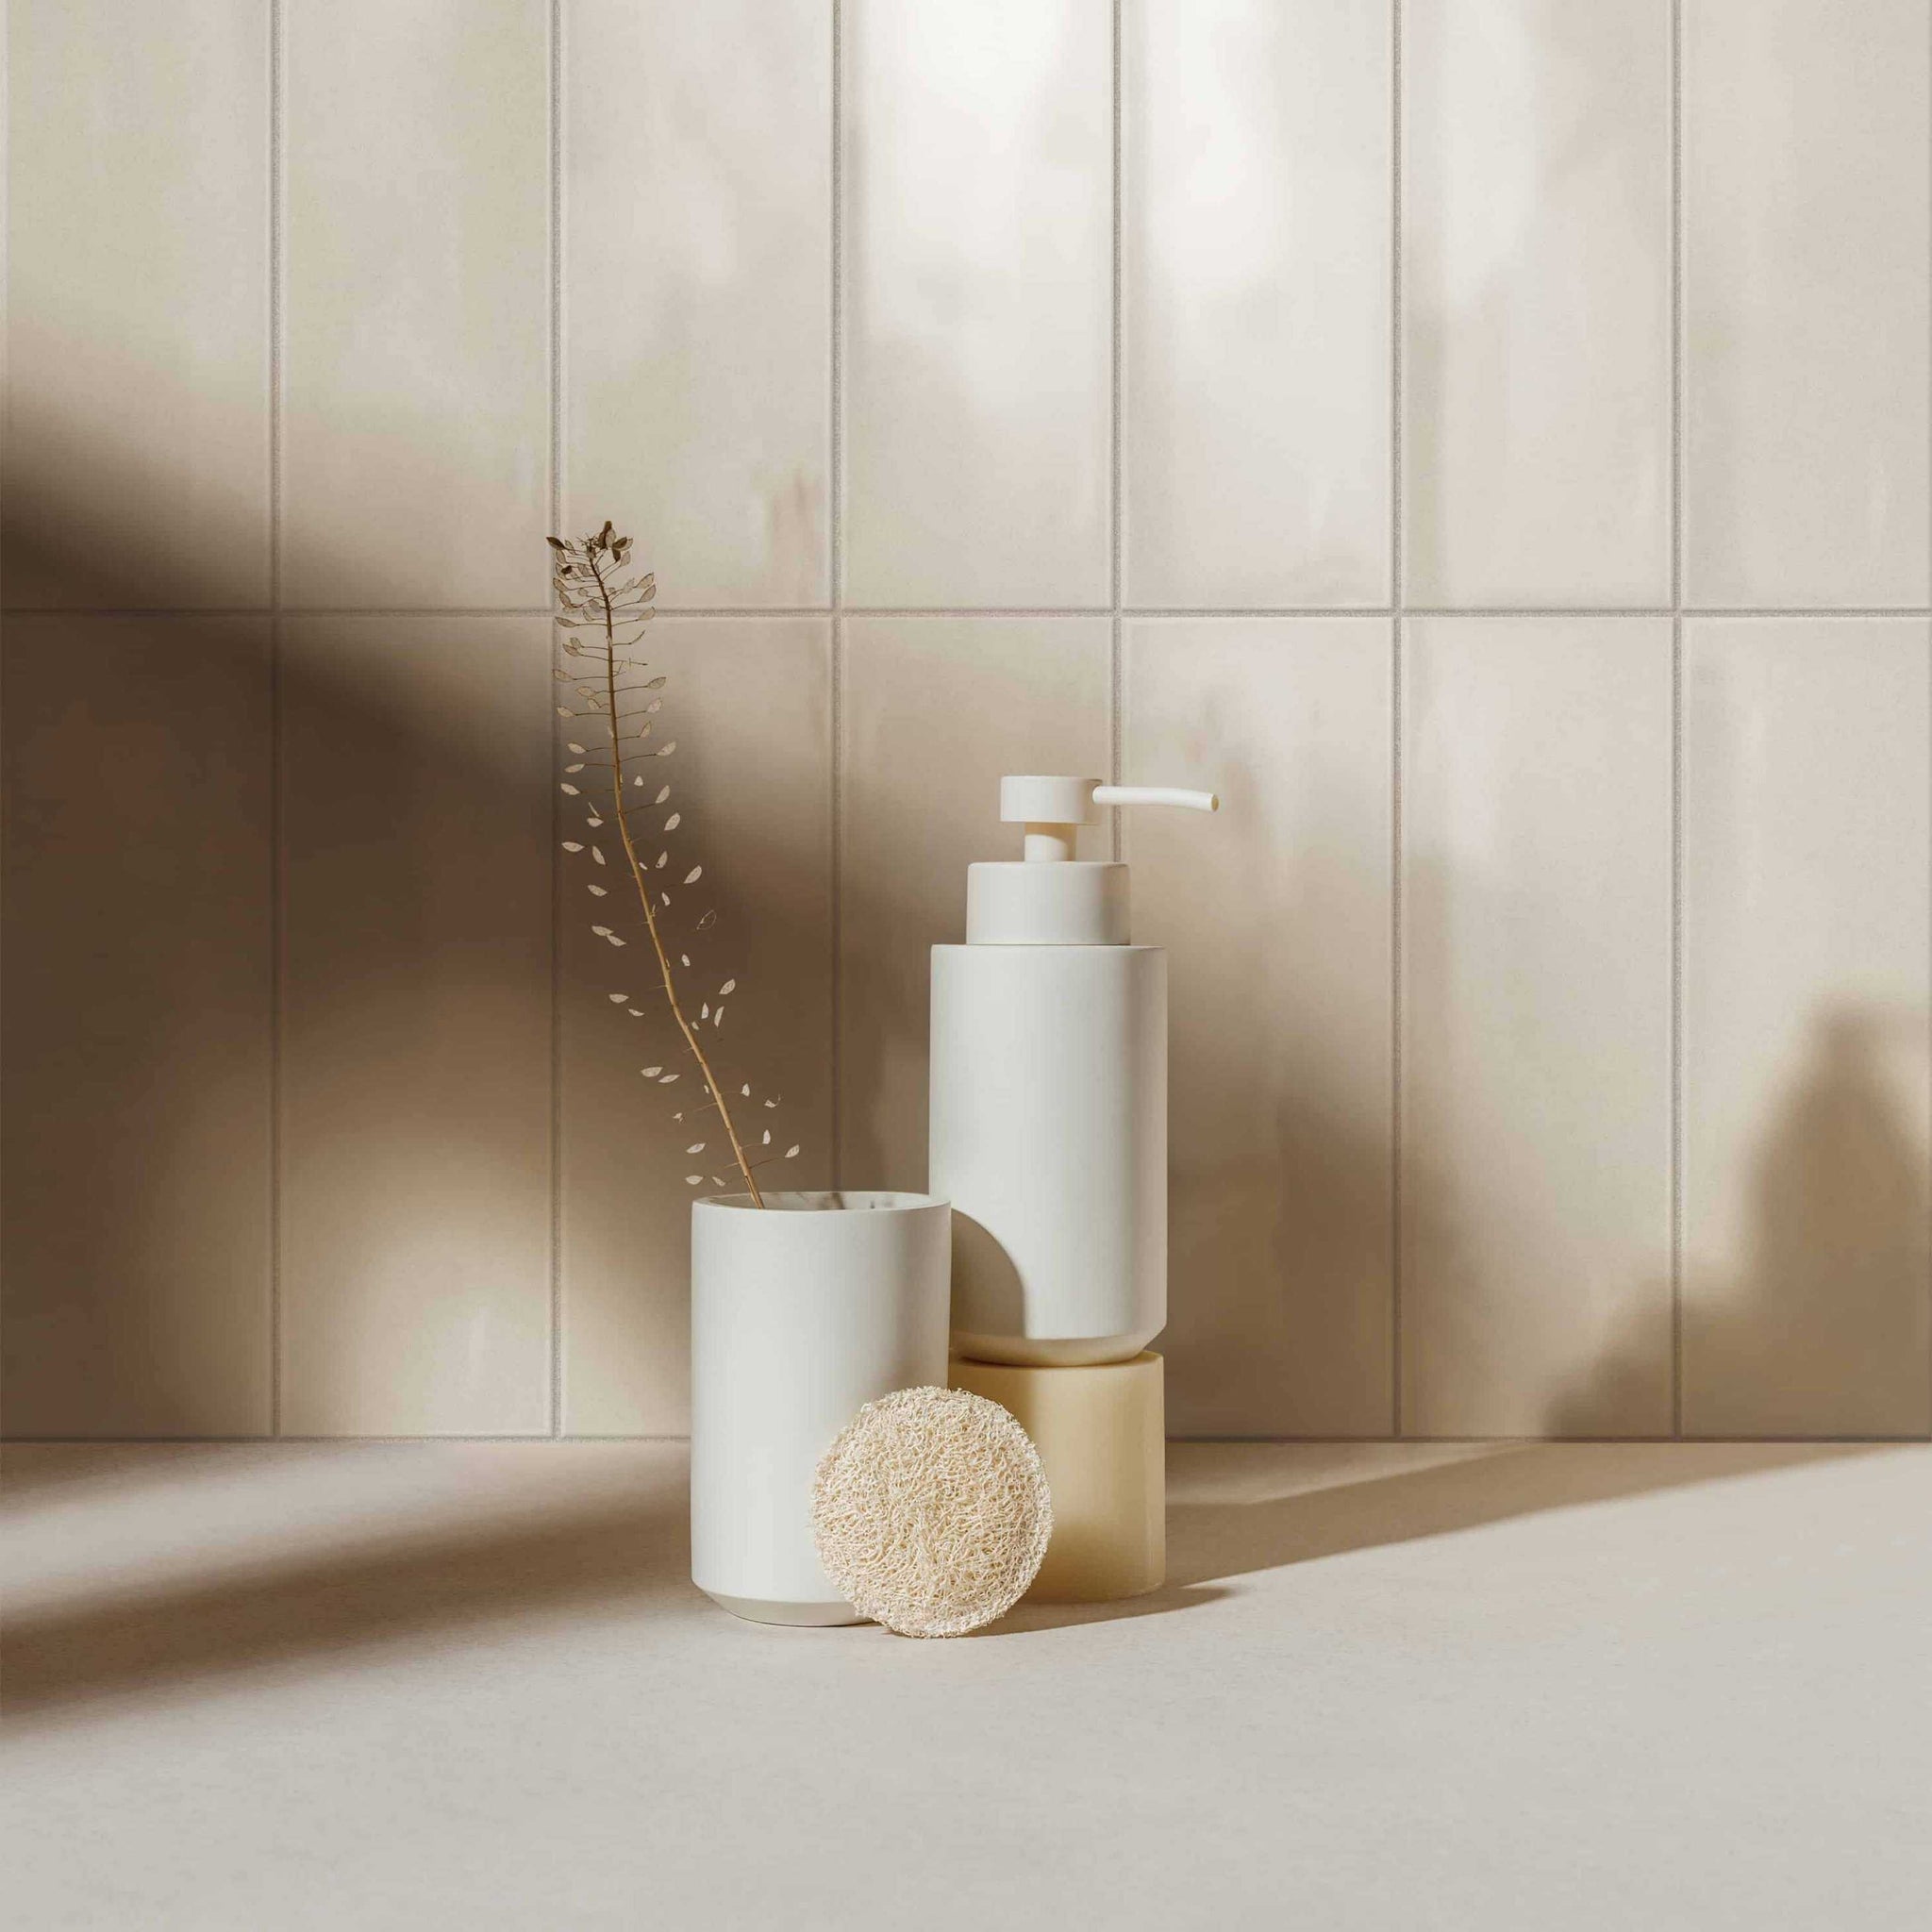 Basato Salle de bain Beige / Basato Bathroom Beige